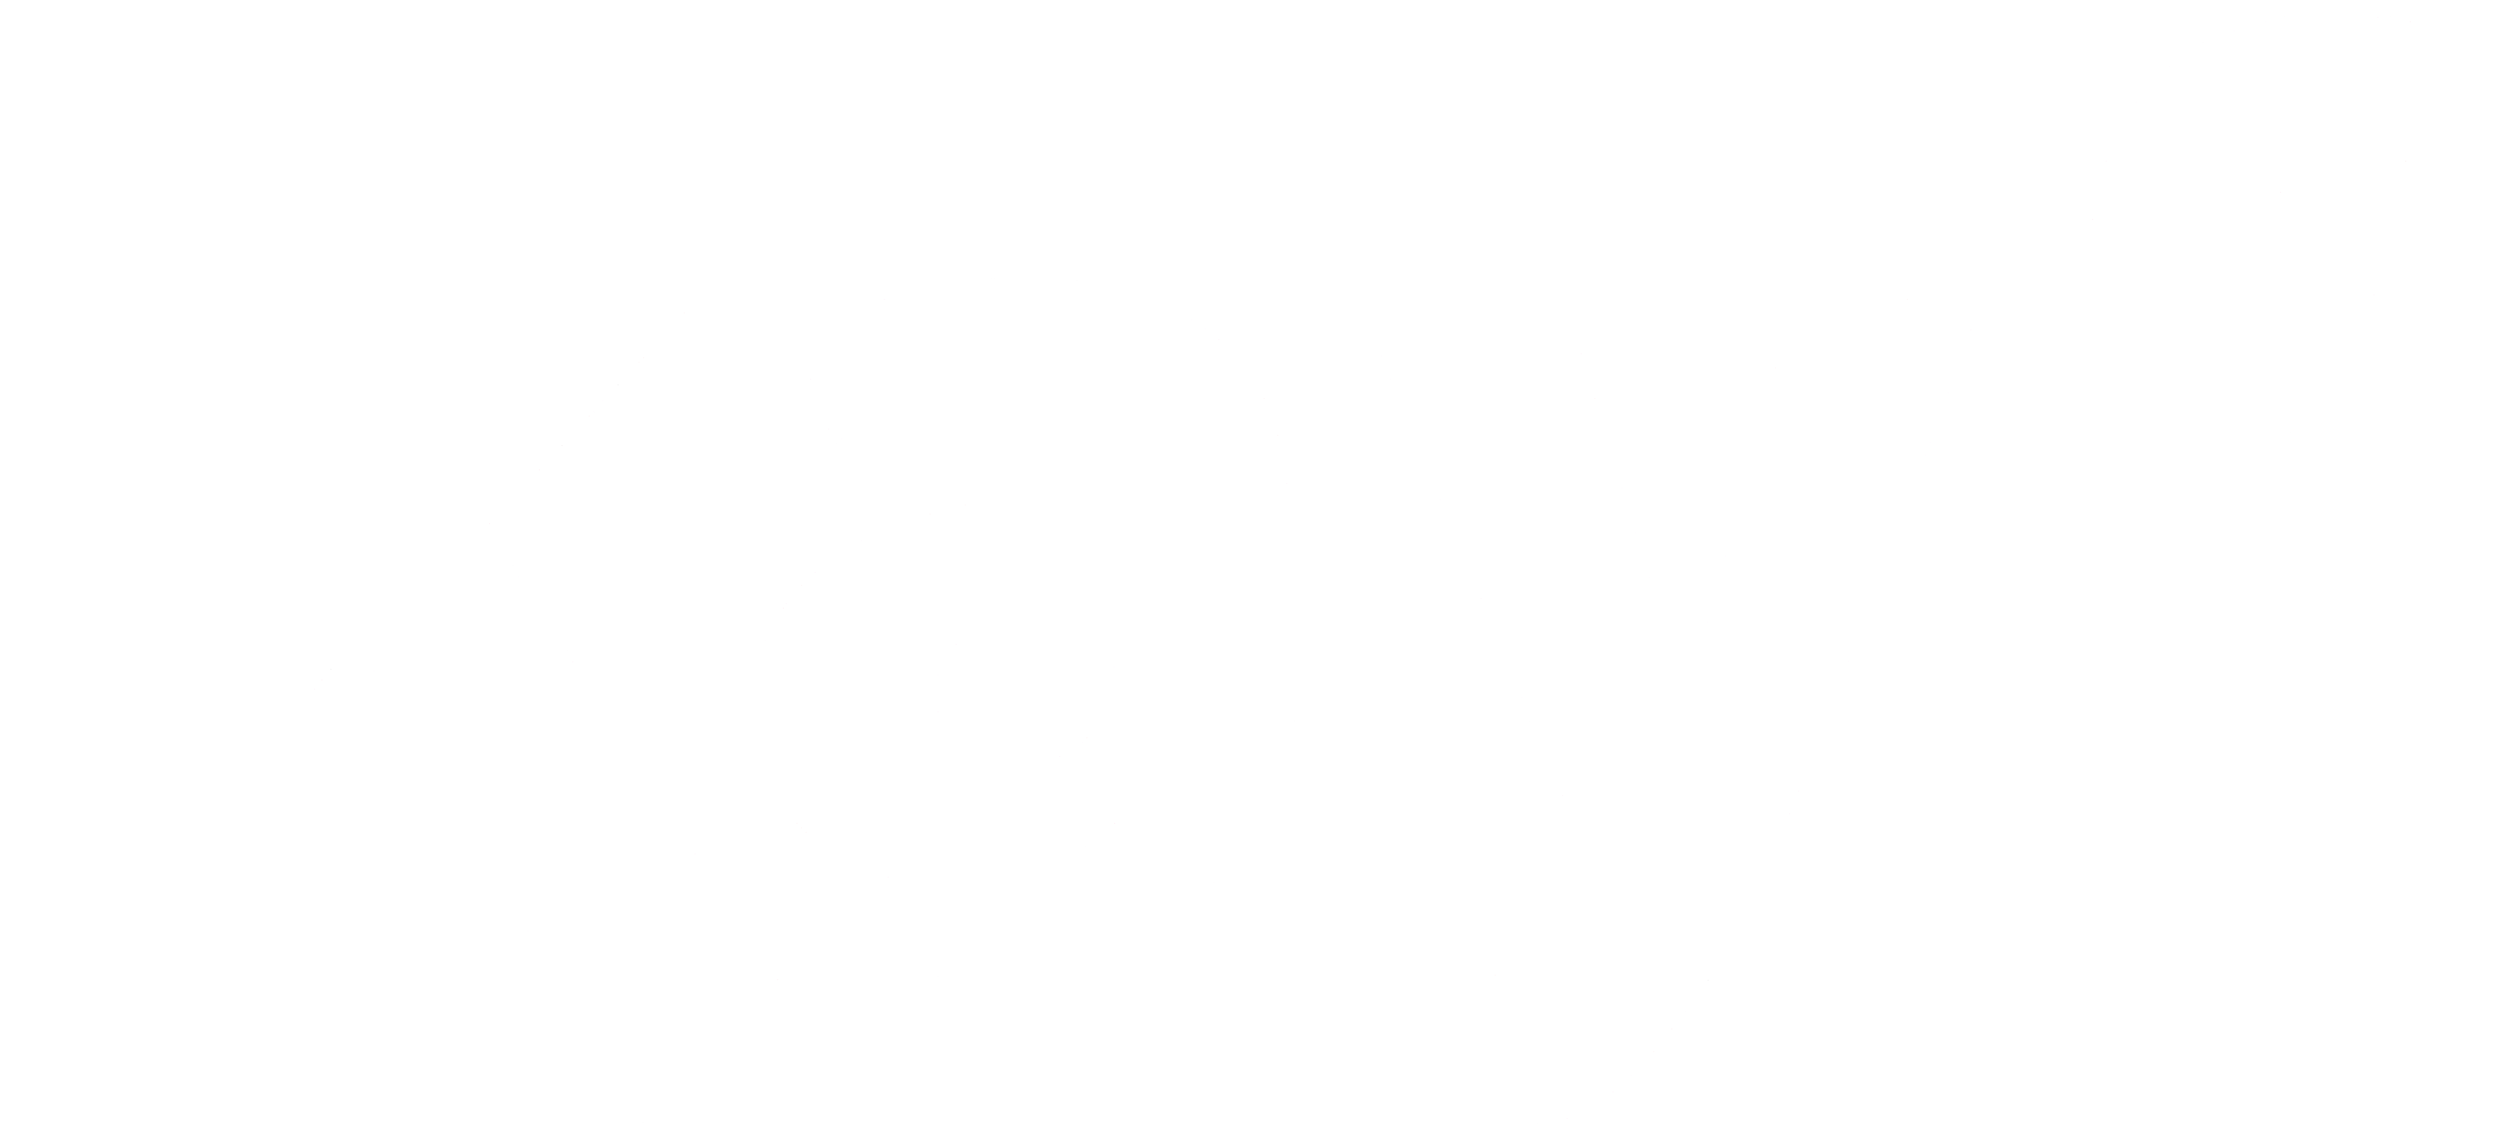 KAY-F